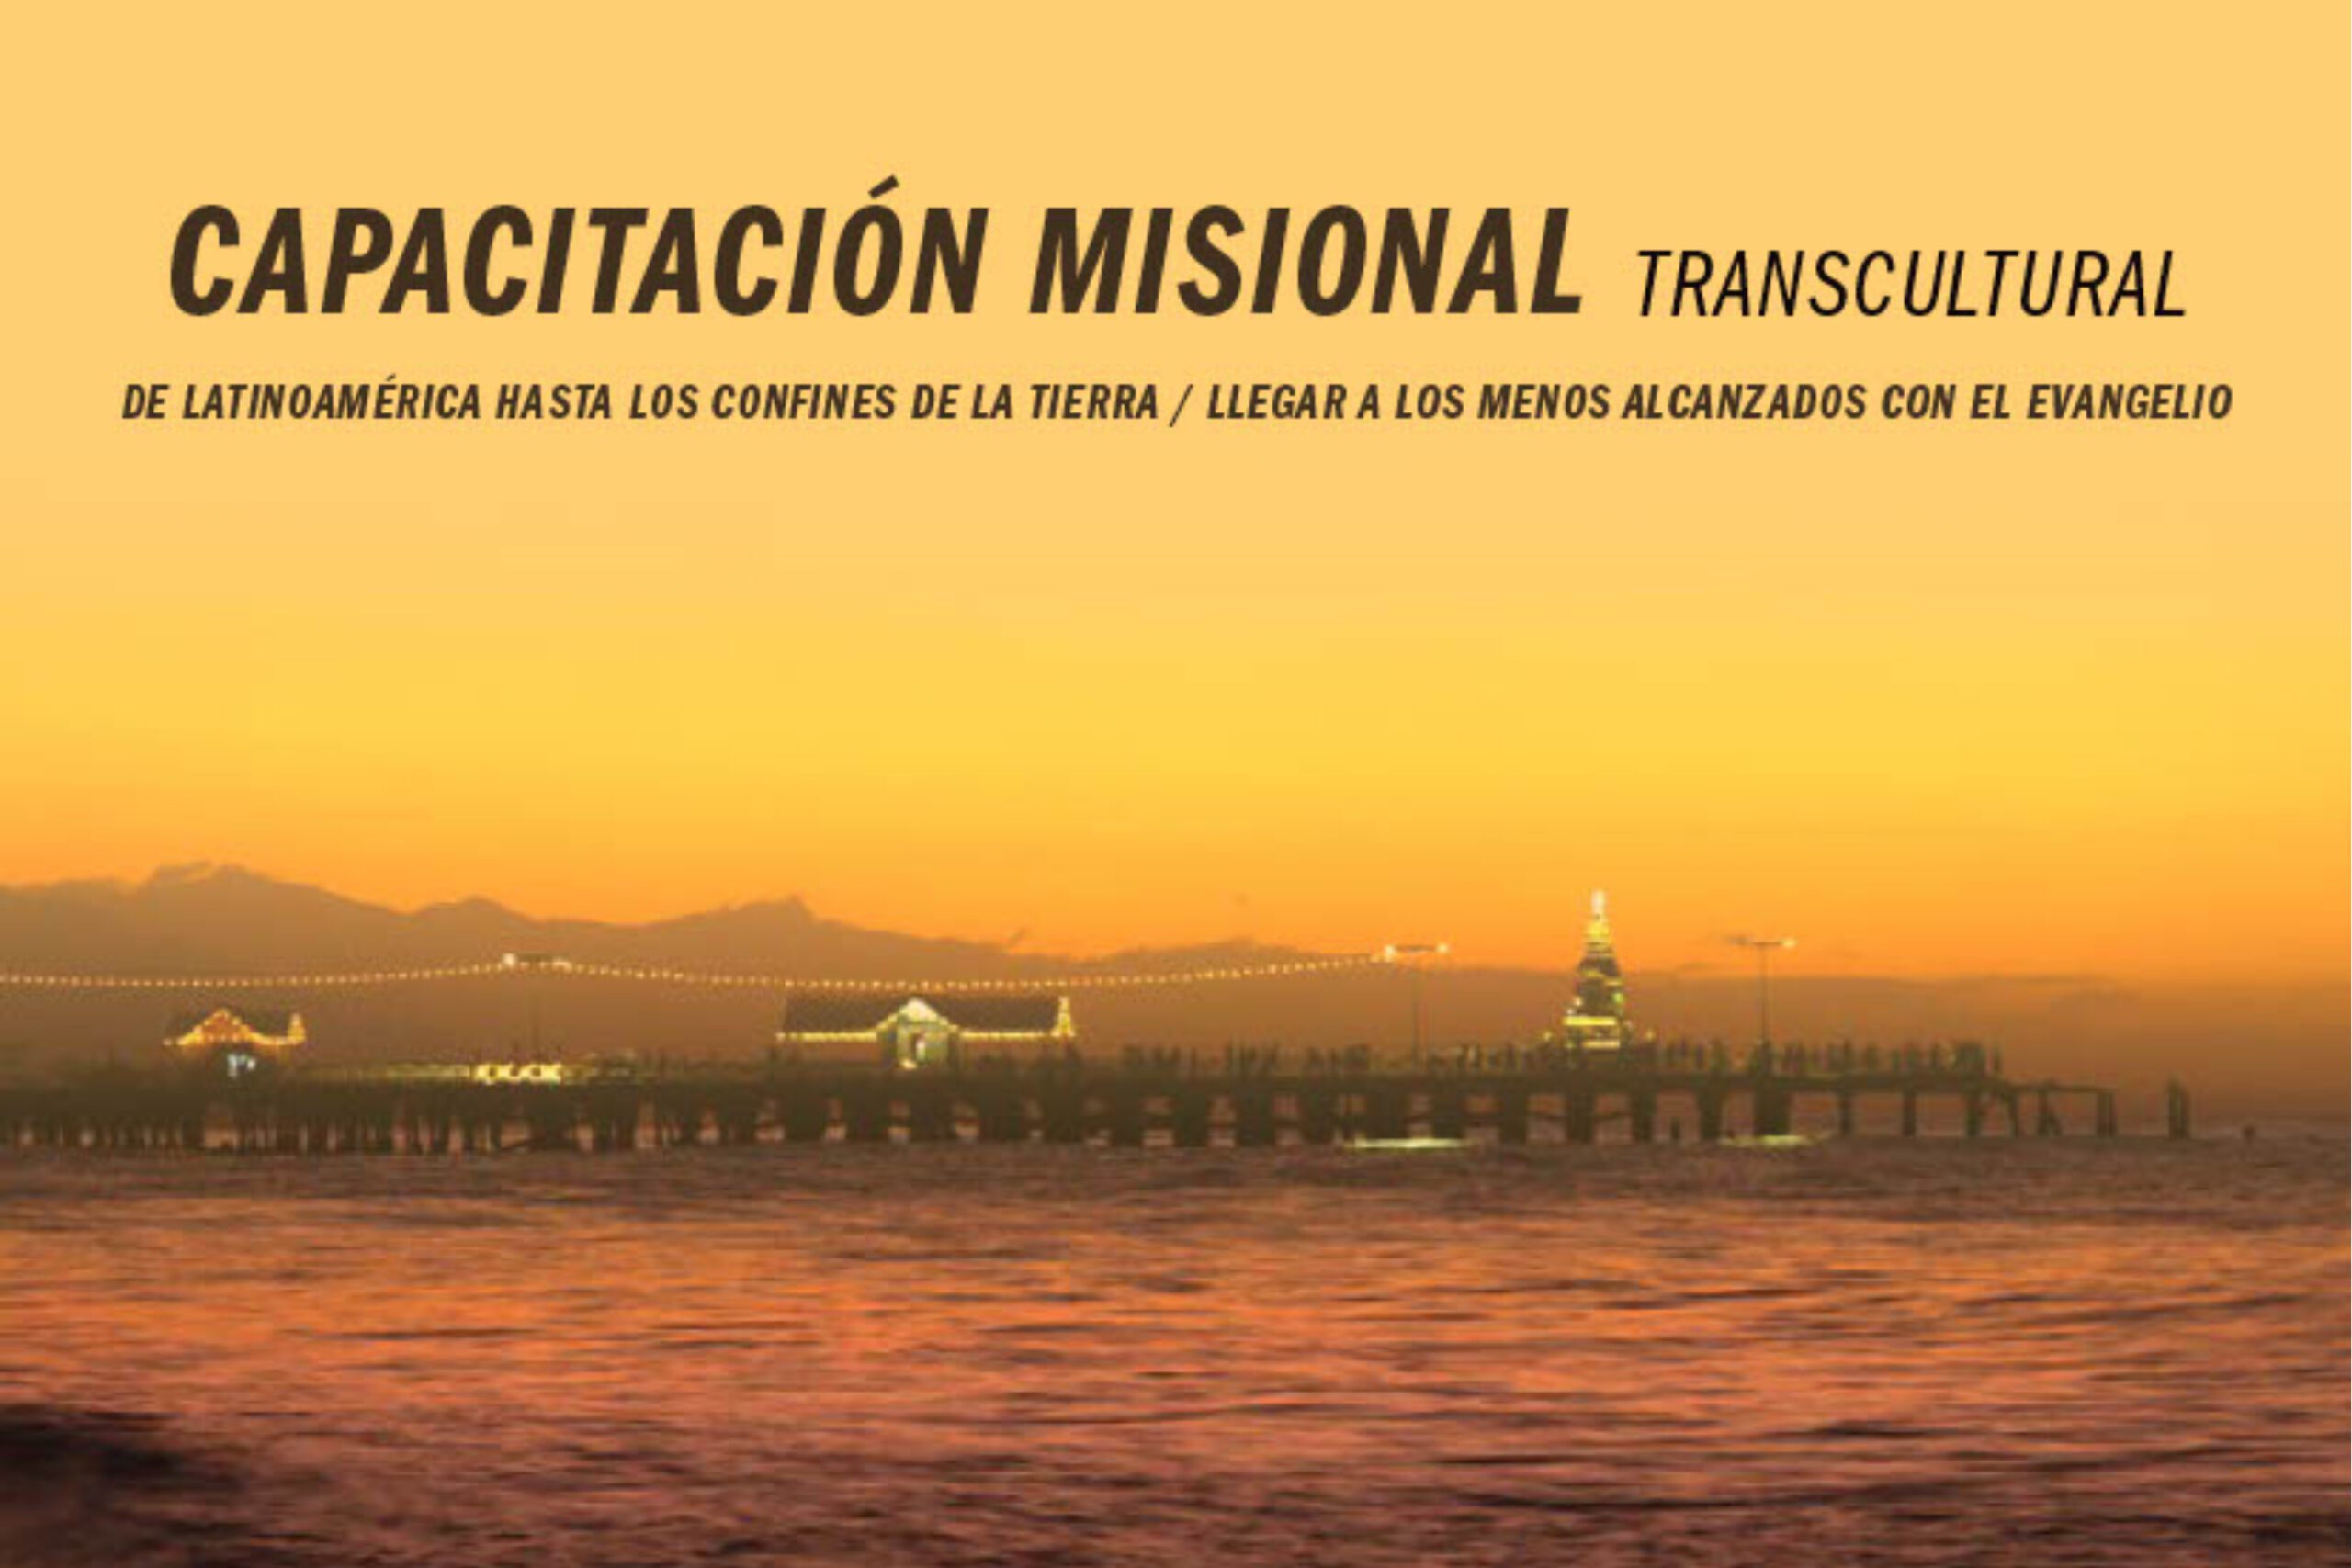 capacitacion misional transcultural-1 (2)